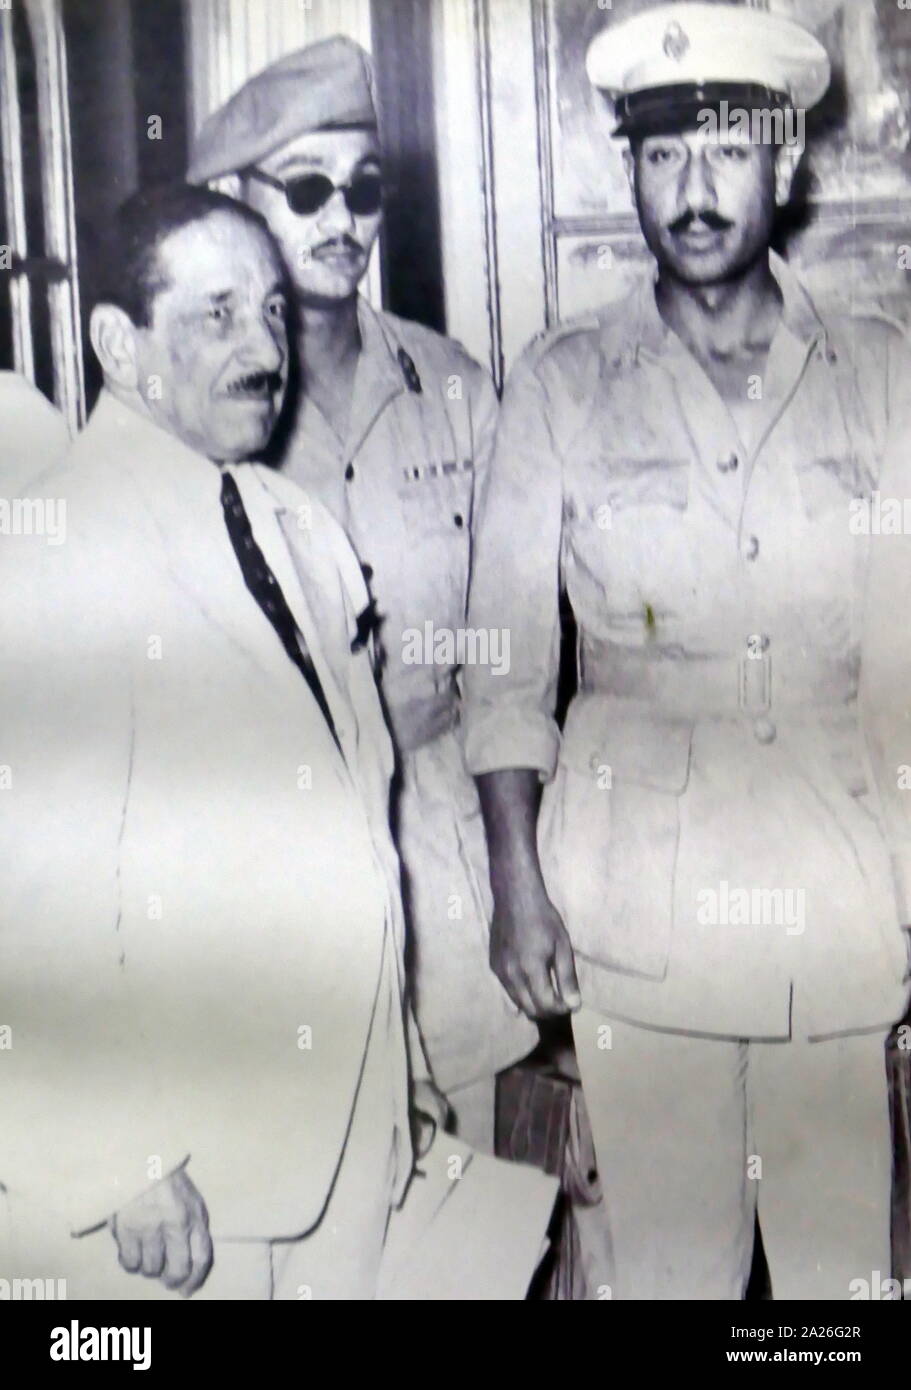 De gauche à droite : Ali Maher, Salah Salem et Anwar Sadate. Premier ministre Maher d'Égypte a reçu de Sadate et Saleh l'abdication de termes pour le roi Farouk durant la Révolution de 1952. Sadate est devenu président de l'Égypte, de 1970 jusqu'à son assassinat par des officiers de l'armée intégriste le 6 octobre 1981. Banque D'Images